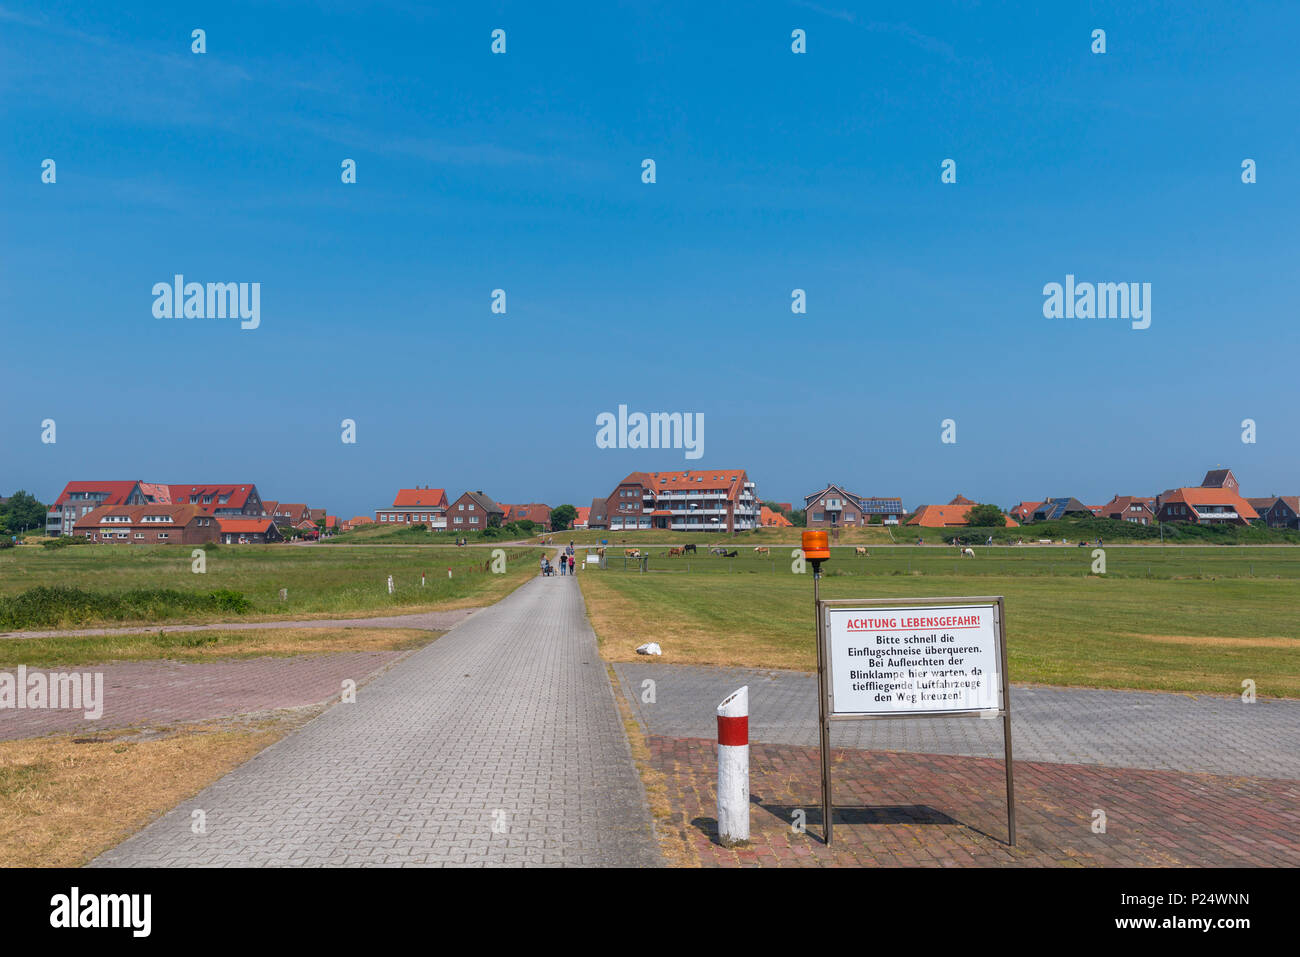 Der kleine Inselflughafen, Baltrum, Ostfriesland, Niedersachsen, Deutschland Foto Stock